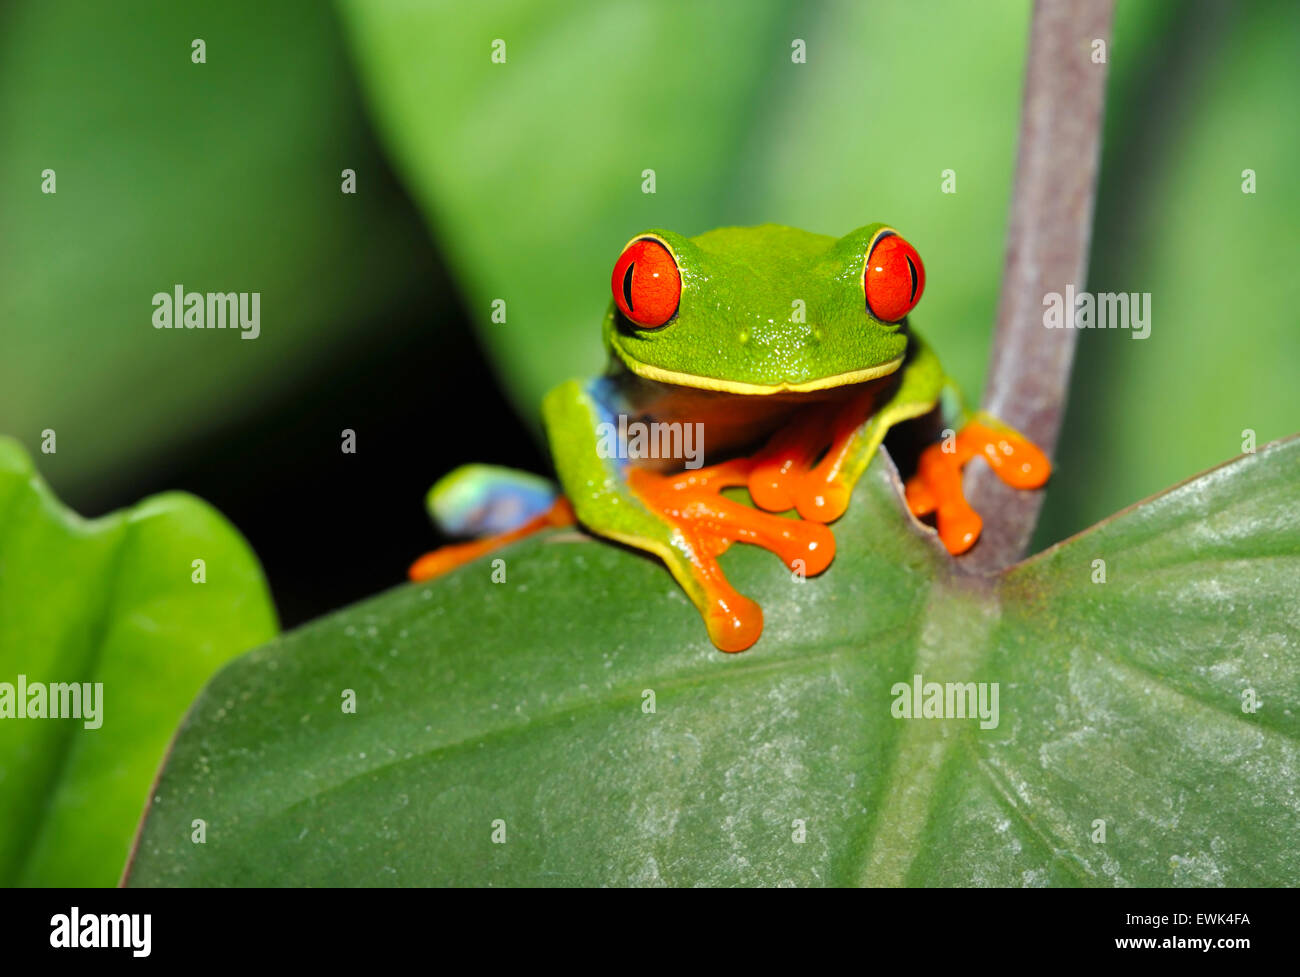 La rana arborícola de ojos rojos Ojos rojos o verdes o rana Agalychnis callidryas curiosamente mirando sentado en hoja verde,corocovado costa rica Foto de stock